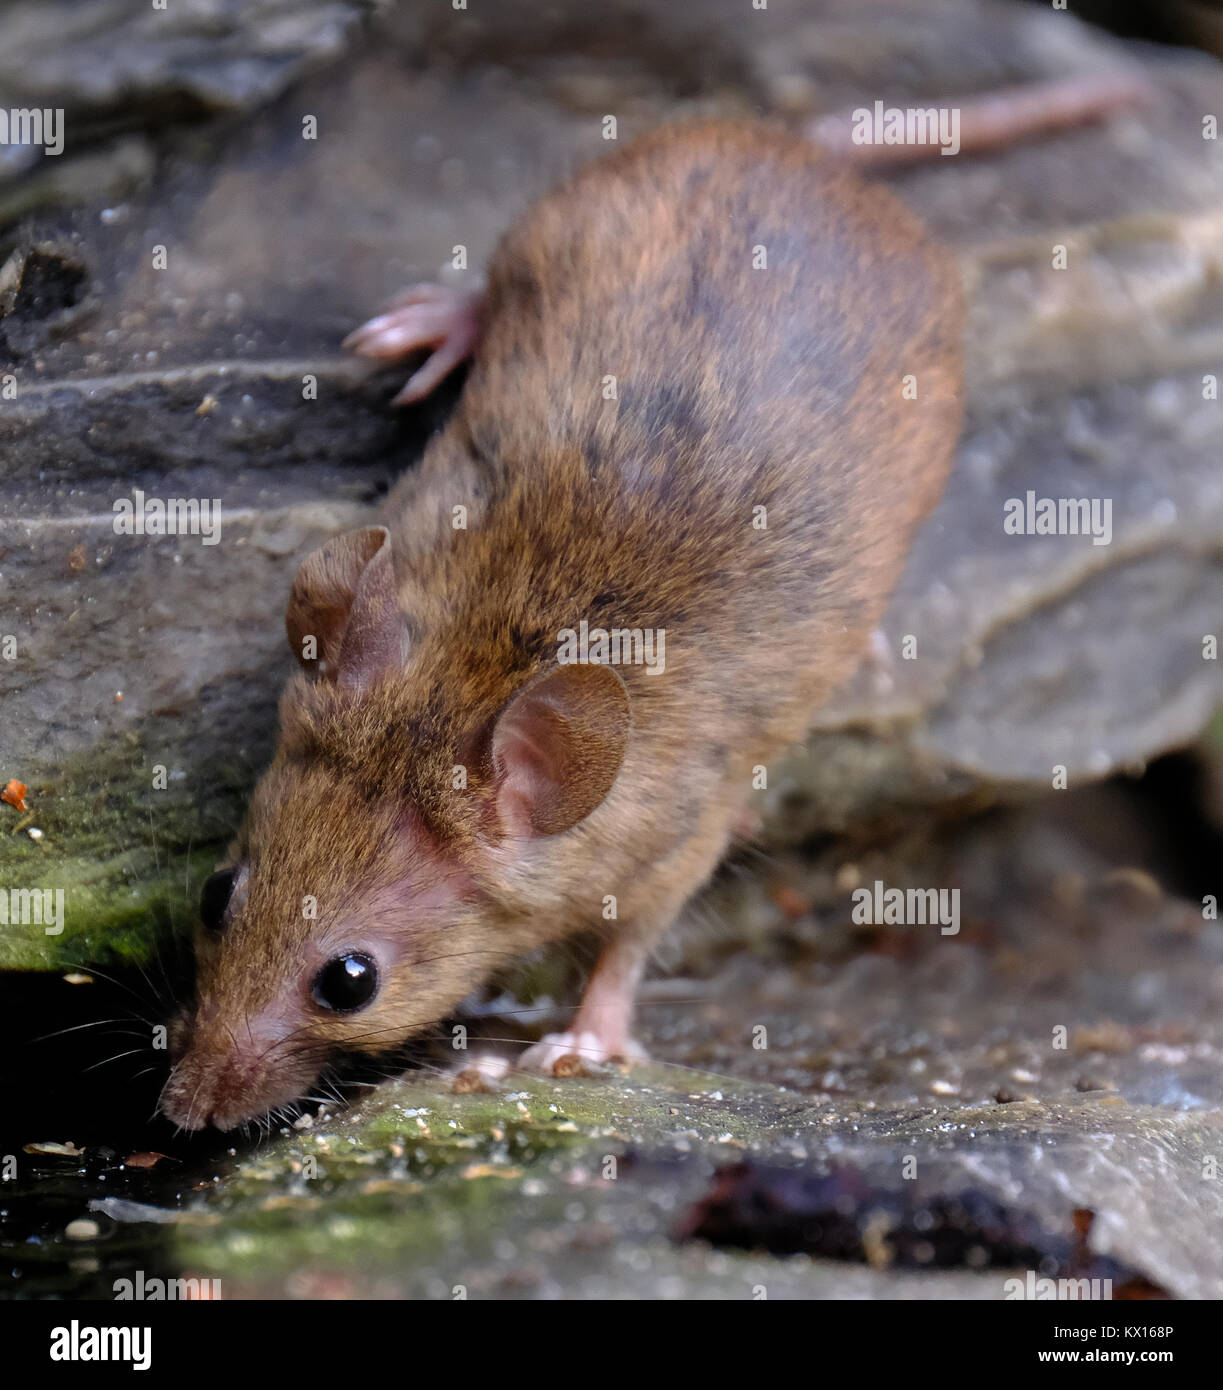 Mice in an urban garden. Stock Photo